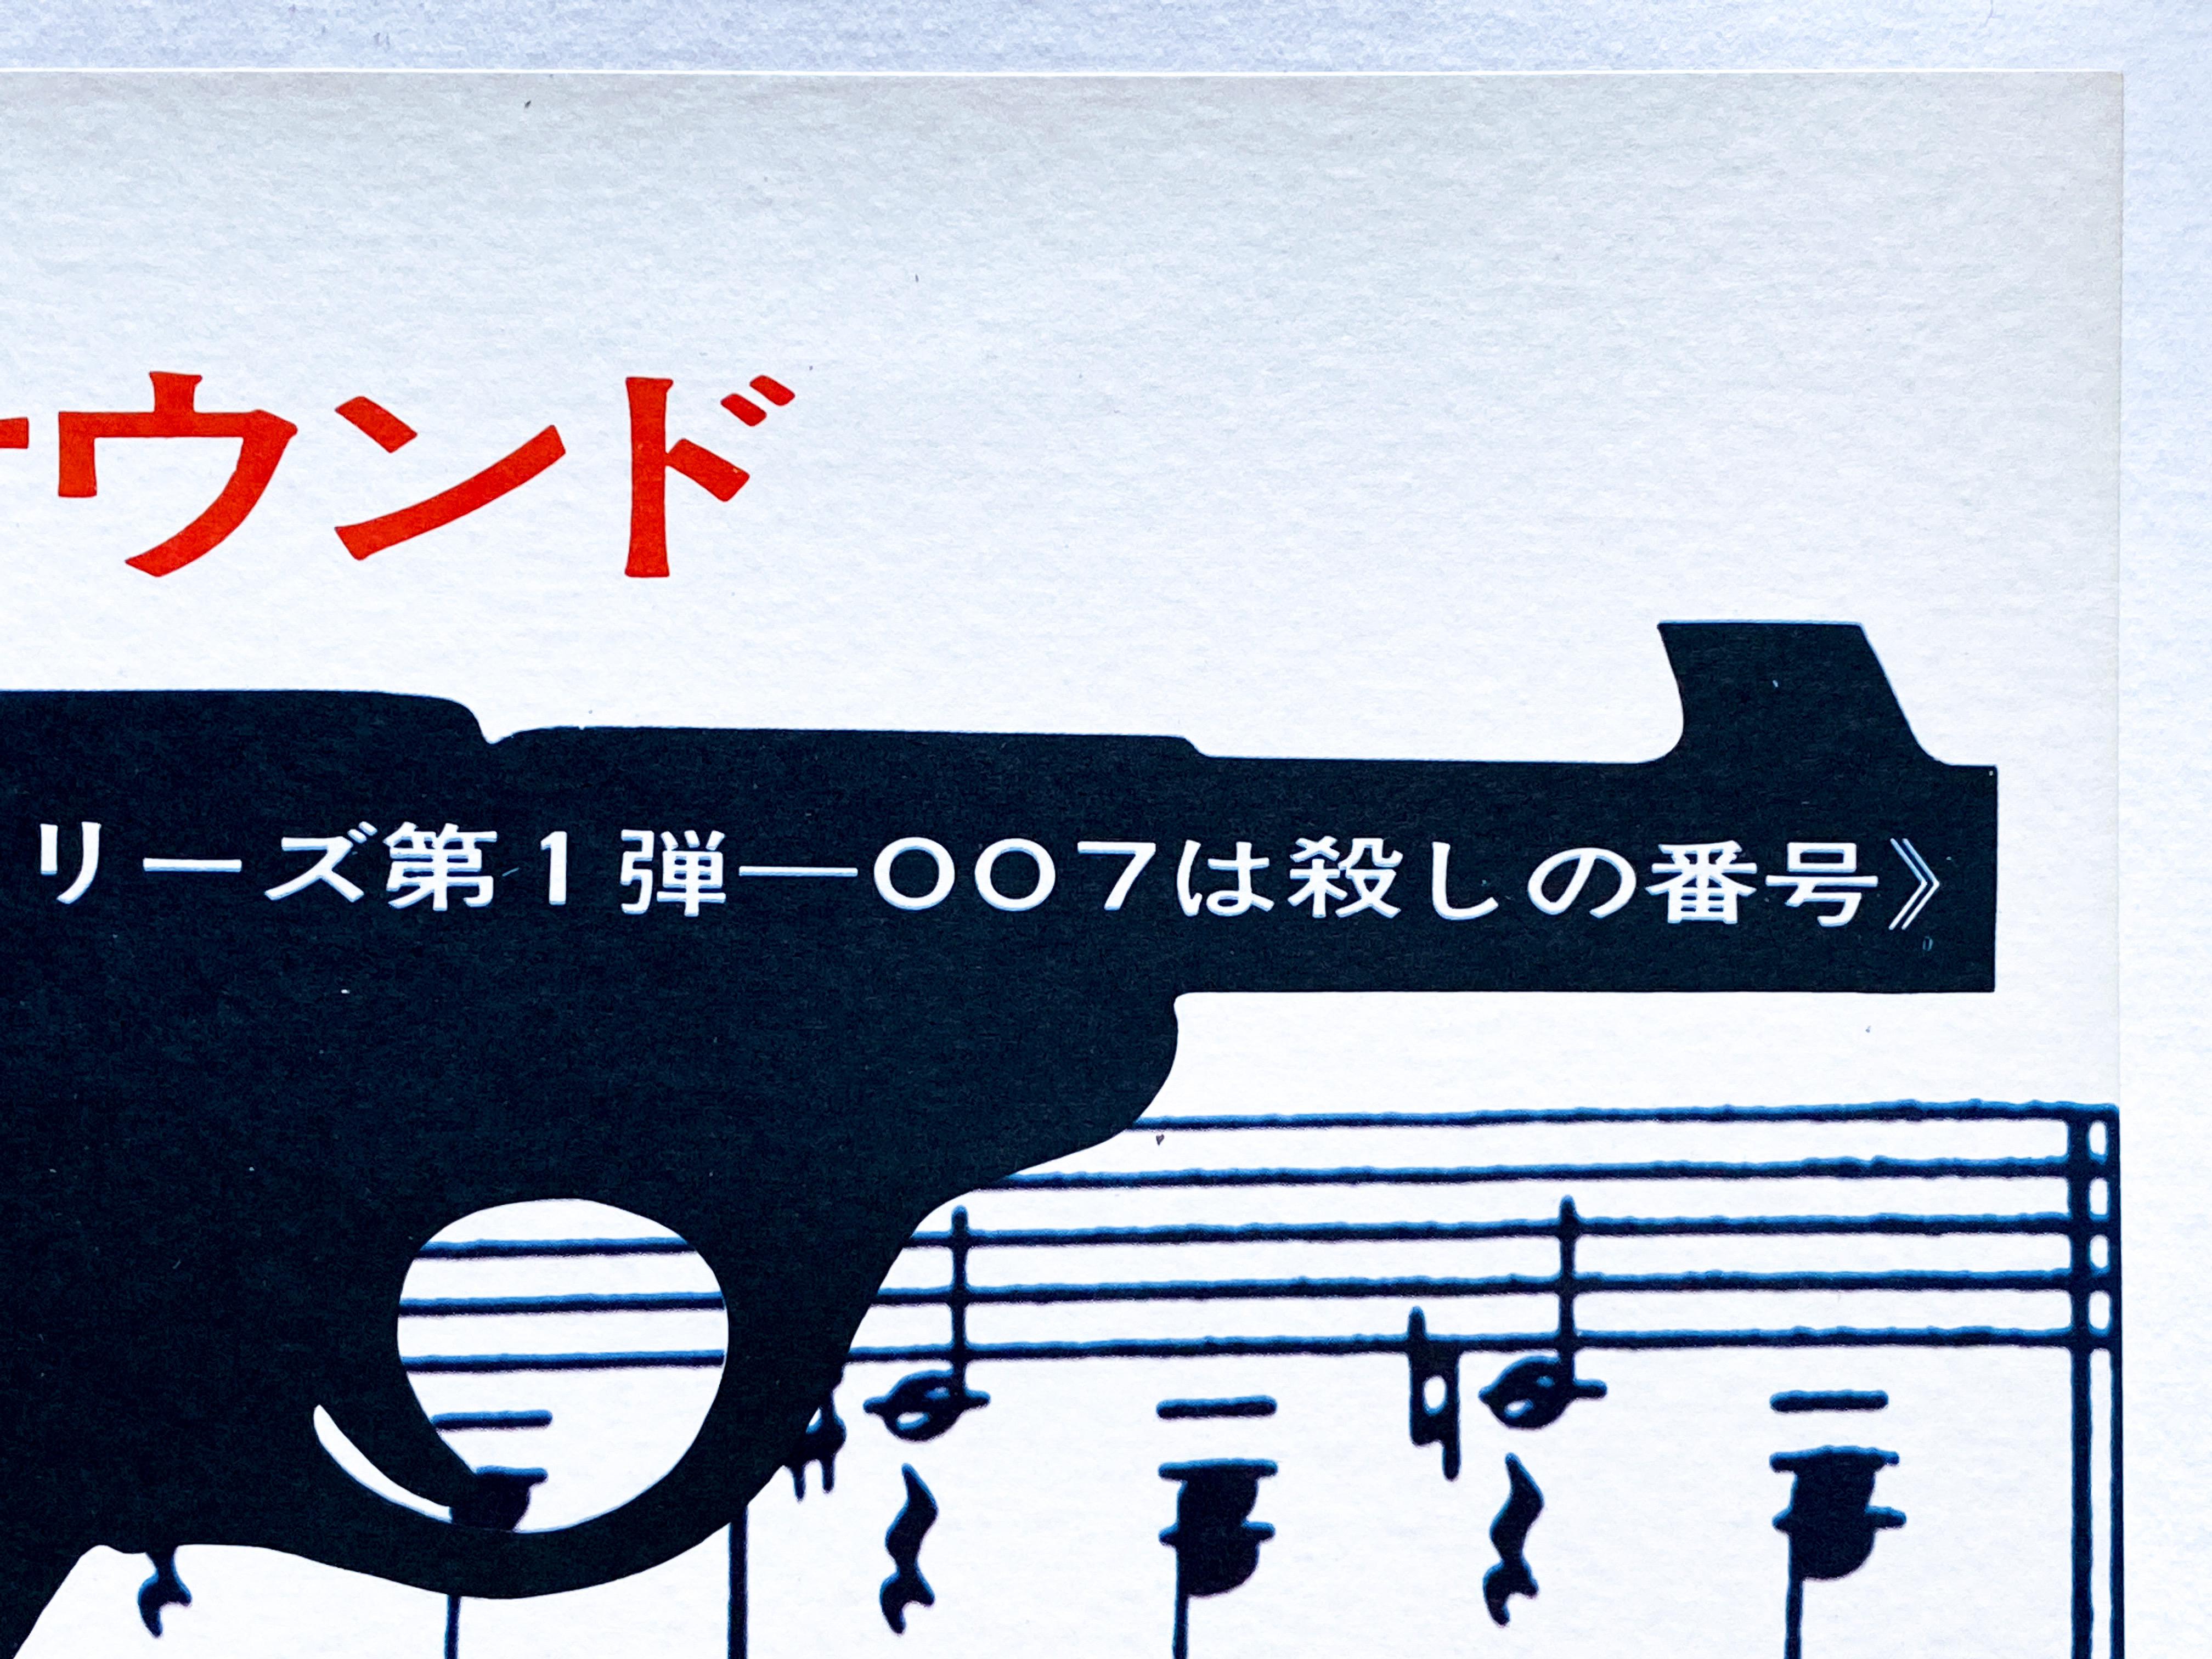 Paper James Bond 'Dr. No' Original Vintage Japanese Movie Poster, 1972